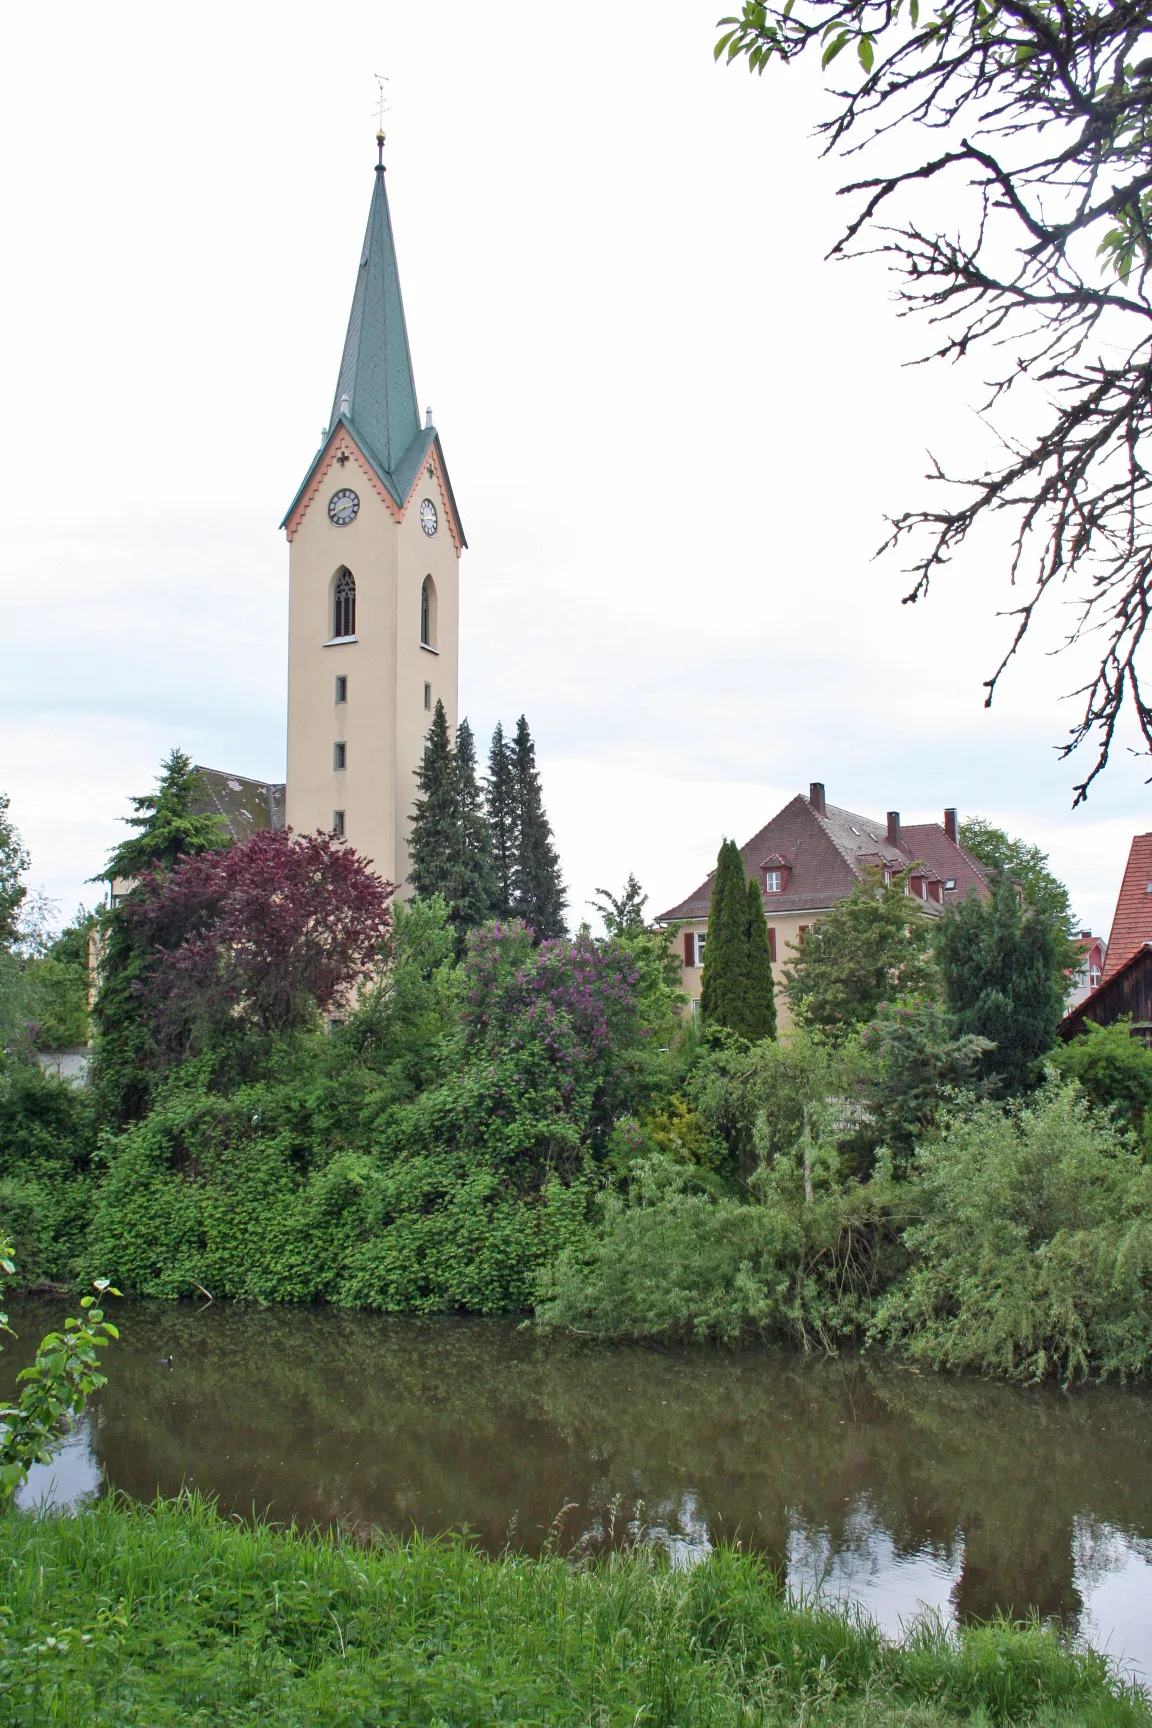 Photo showing: Katholischen Pfarrkirche "Unserer lieben Frau" (Turmhöhe: 66 Meter) in Eriskirch, mit dem Fluss Schussen.